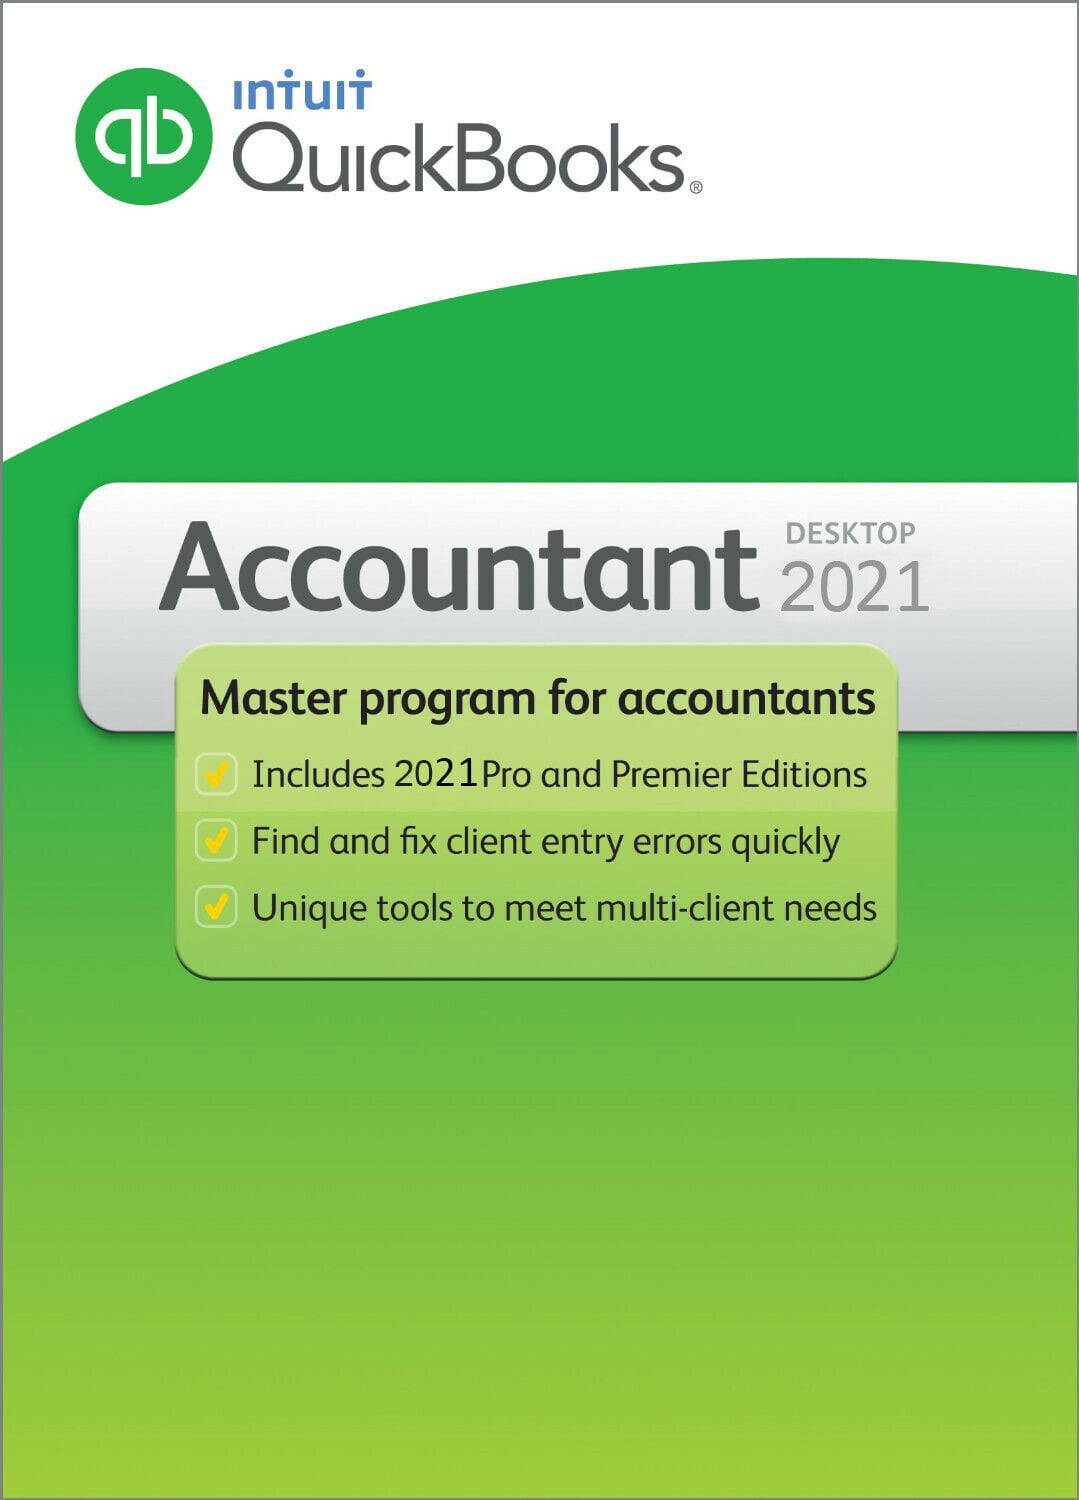 quickbooks-accountant-2021